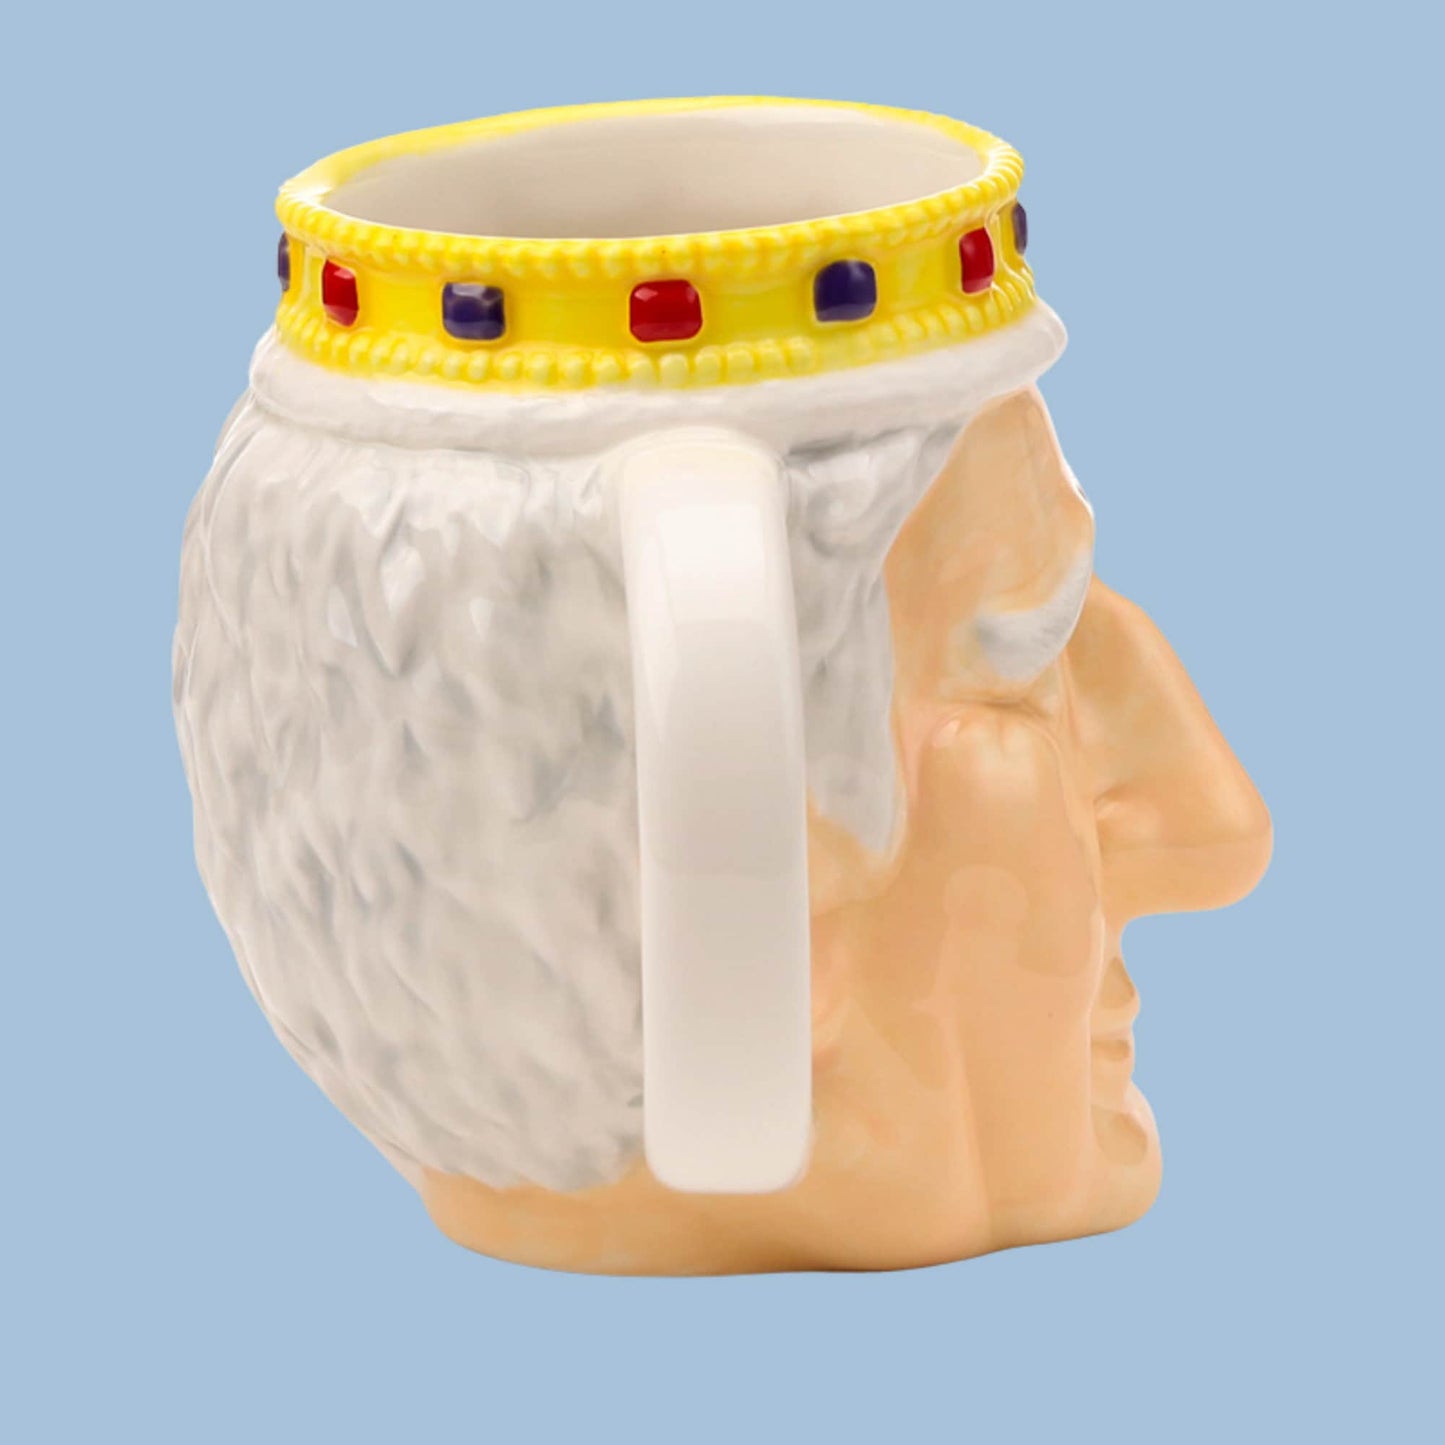 Novelty King Charles Shaped Mug Ceramic Monarch Mug Royal Mug King Gift Mug Royal Family Lover Present Charles Coffee Cup Fun Royal Souvenir